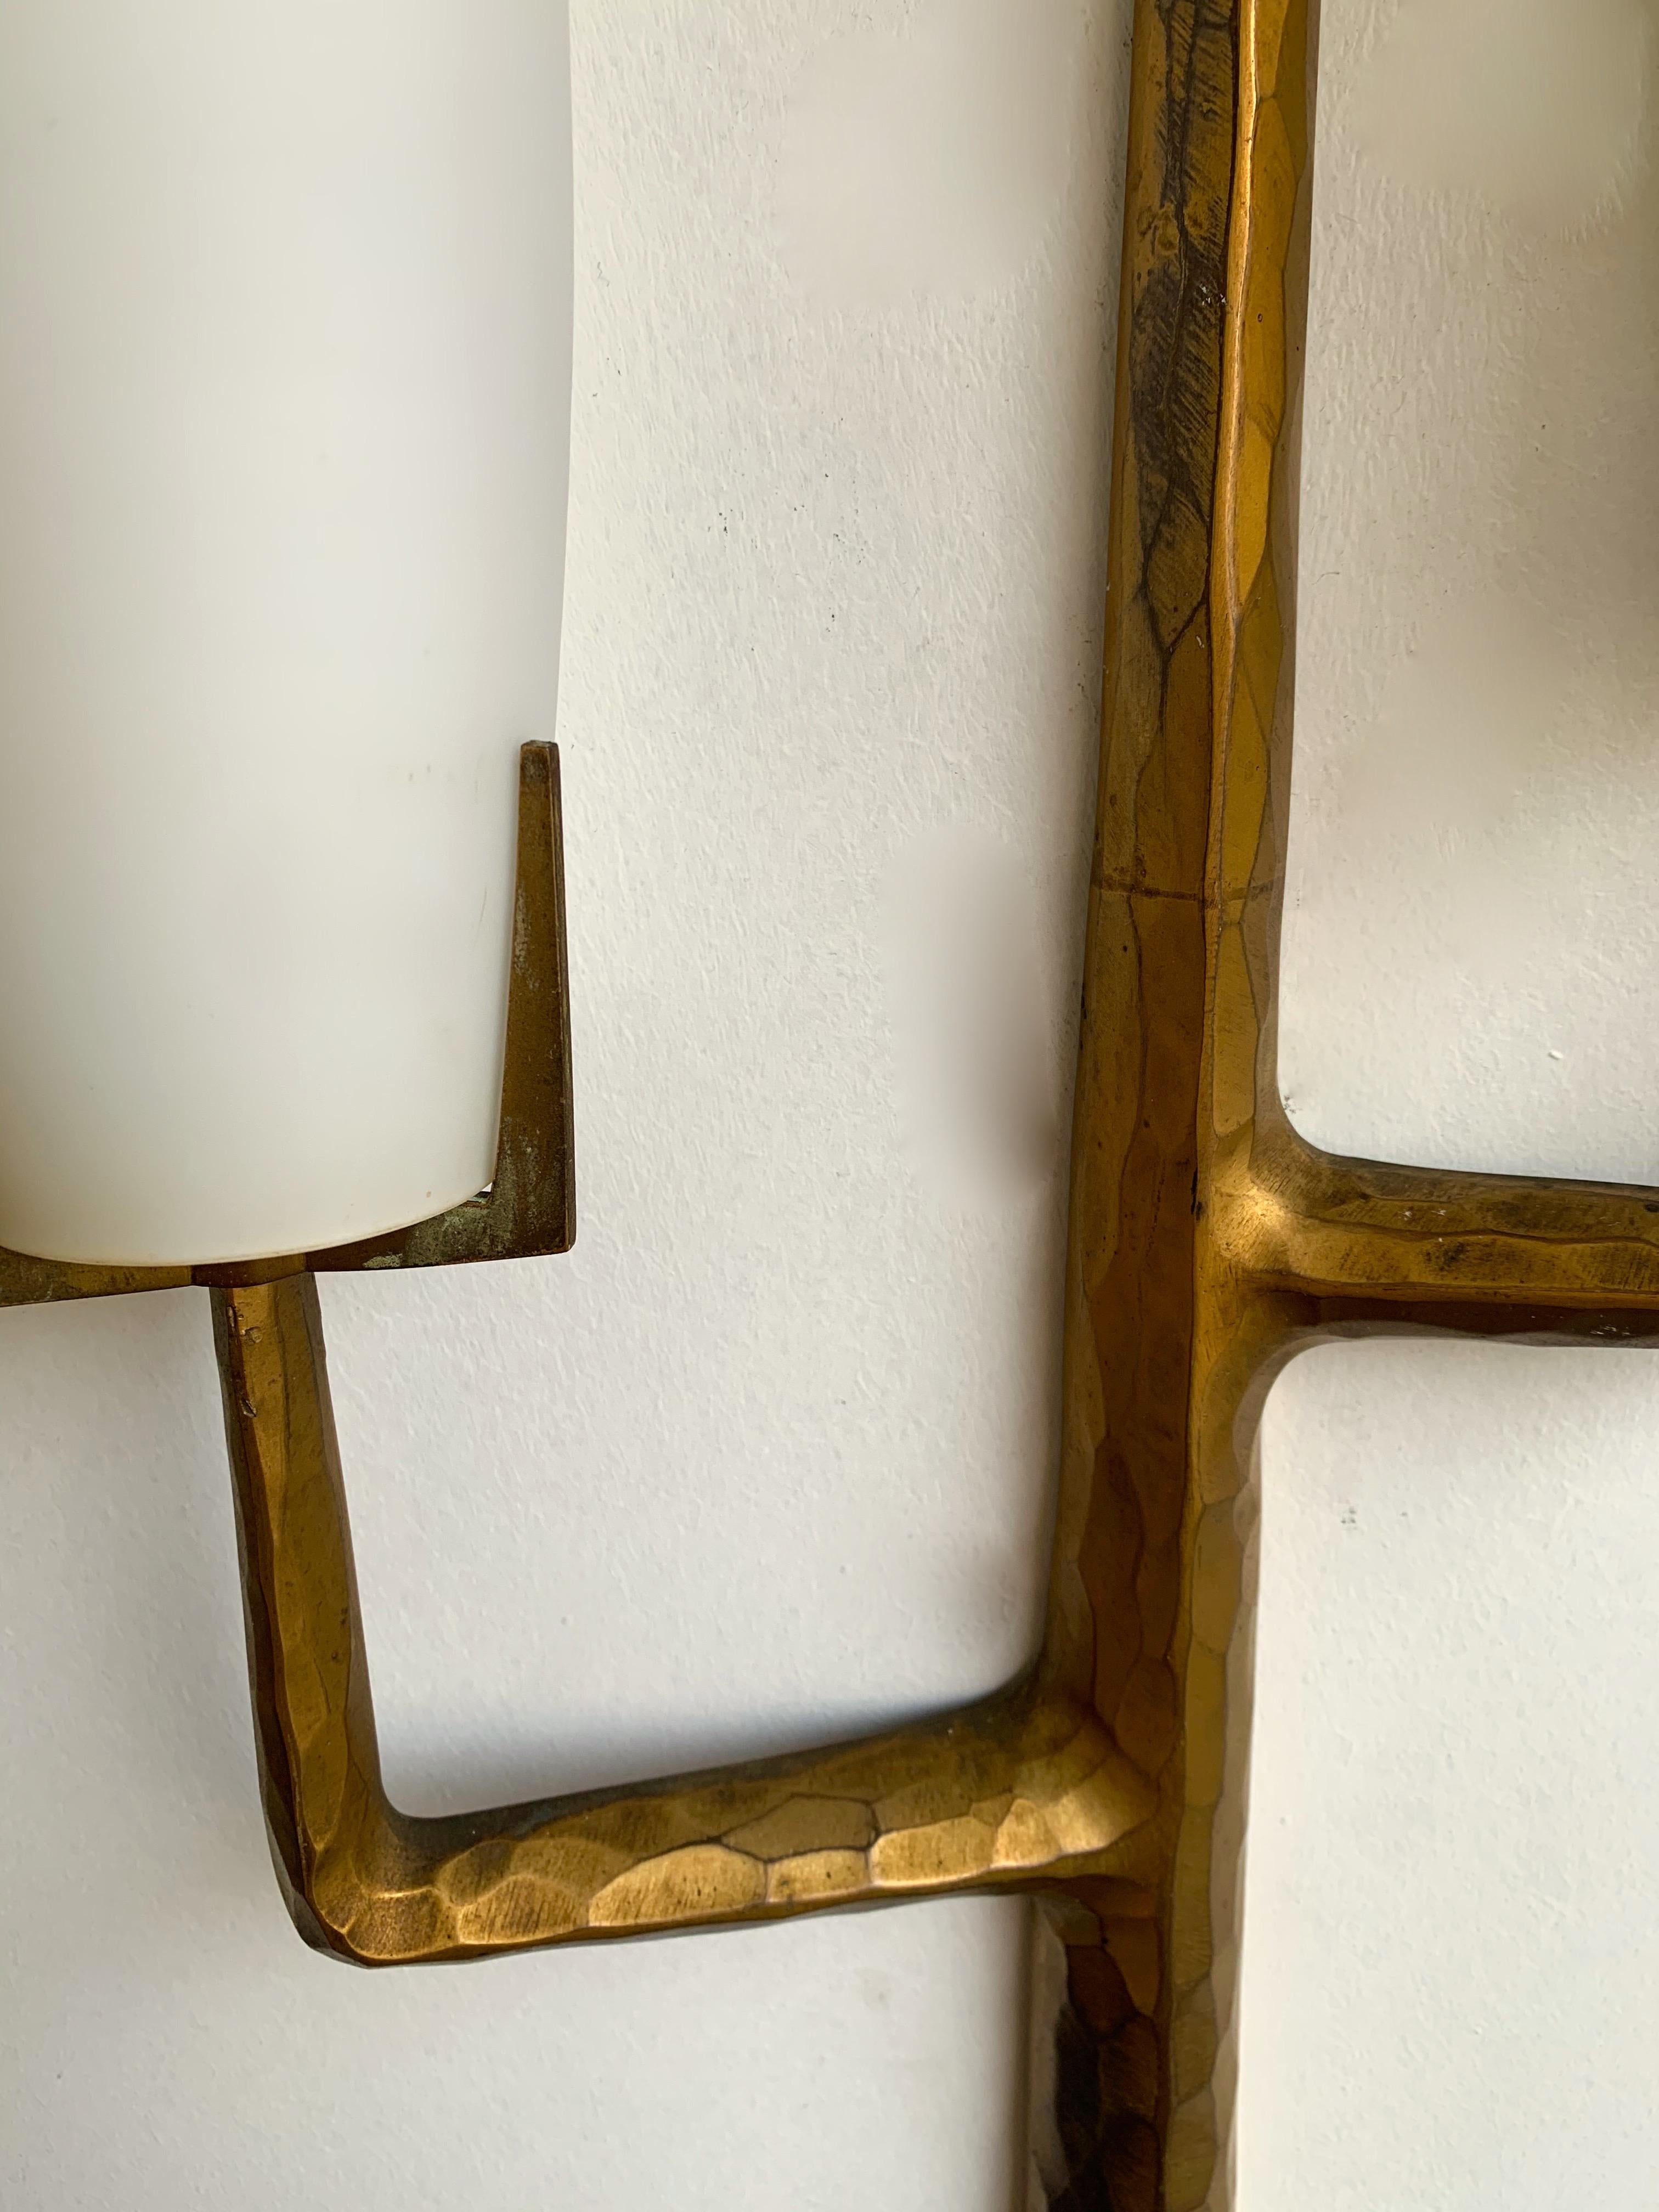 Sehr seltene 3 Lichter Paar Wandleuchte Leuchten Wandleuchter vergoldeter Bronze von Maison Arlus:: sehr interessant und skulpturale Modell auf Felix Agostini Zeichnung für die Herstellung basiert. Es handelt sich um eine bekannte Manufaktur wie